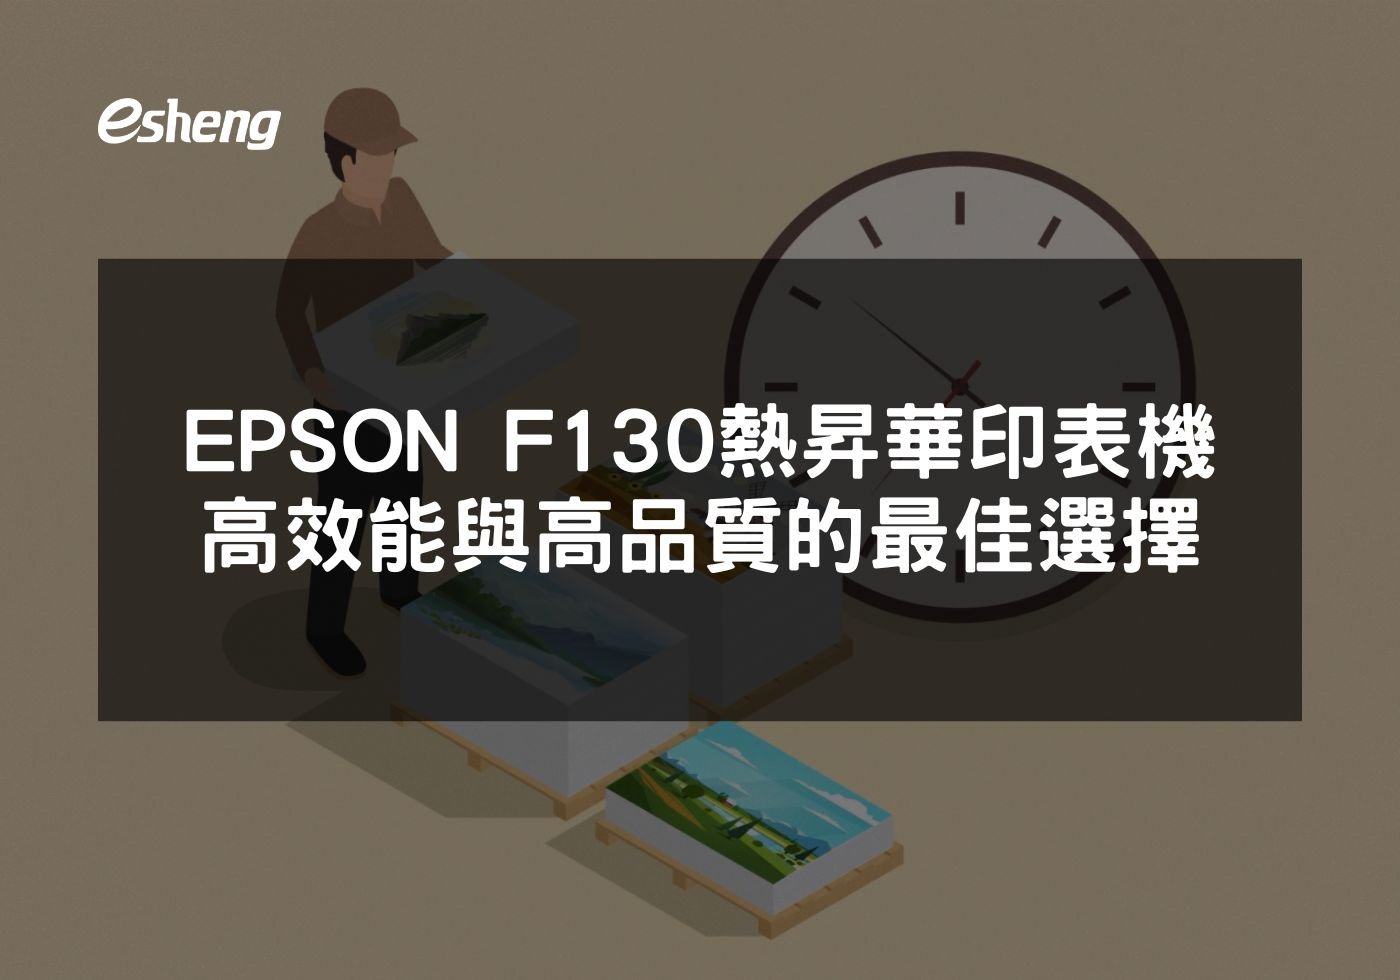 閱讀更多文章 EPSON F130熱昇華印表機高效能與高品質的最佳選擇